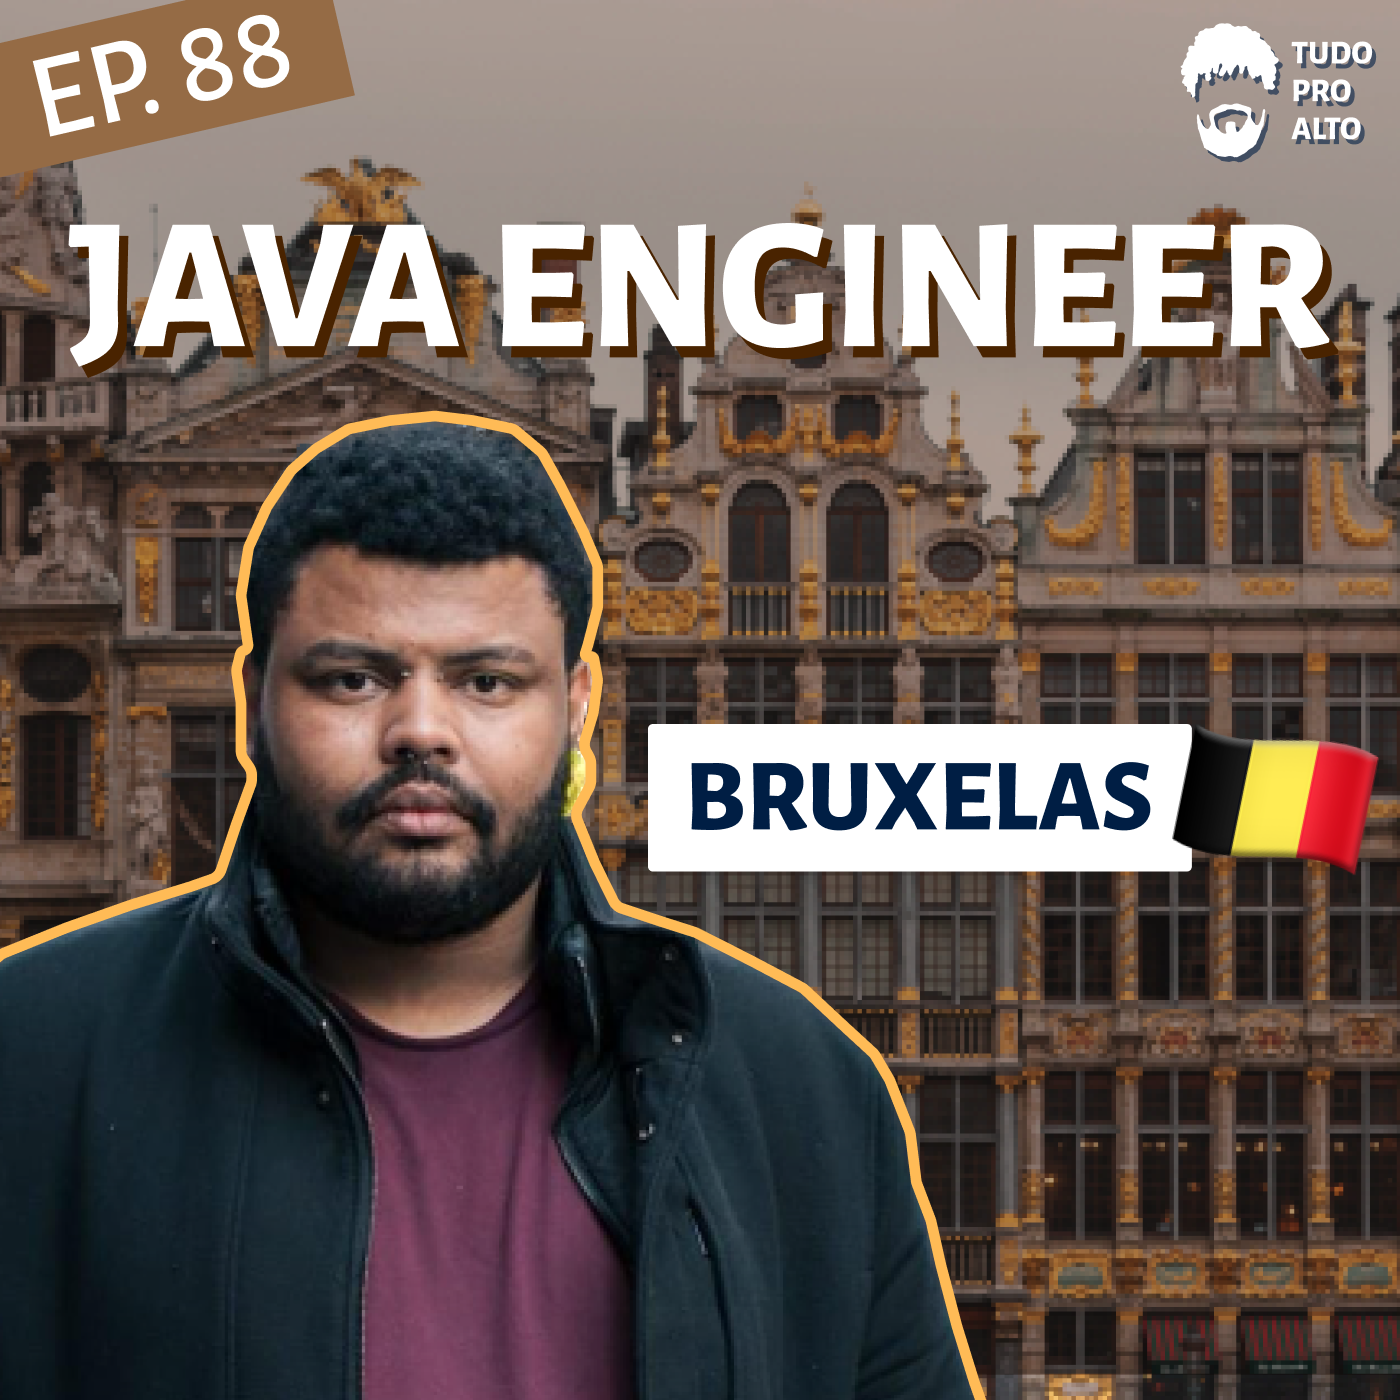 Java Software Engineer em Bruxelas, Bélgica, com Flávio Coutinho - Vida em Portugal e Bélgica #88